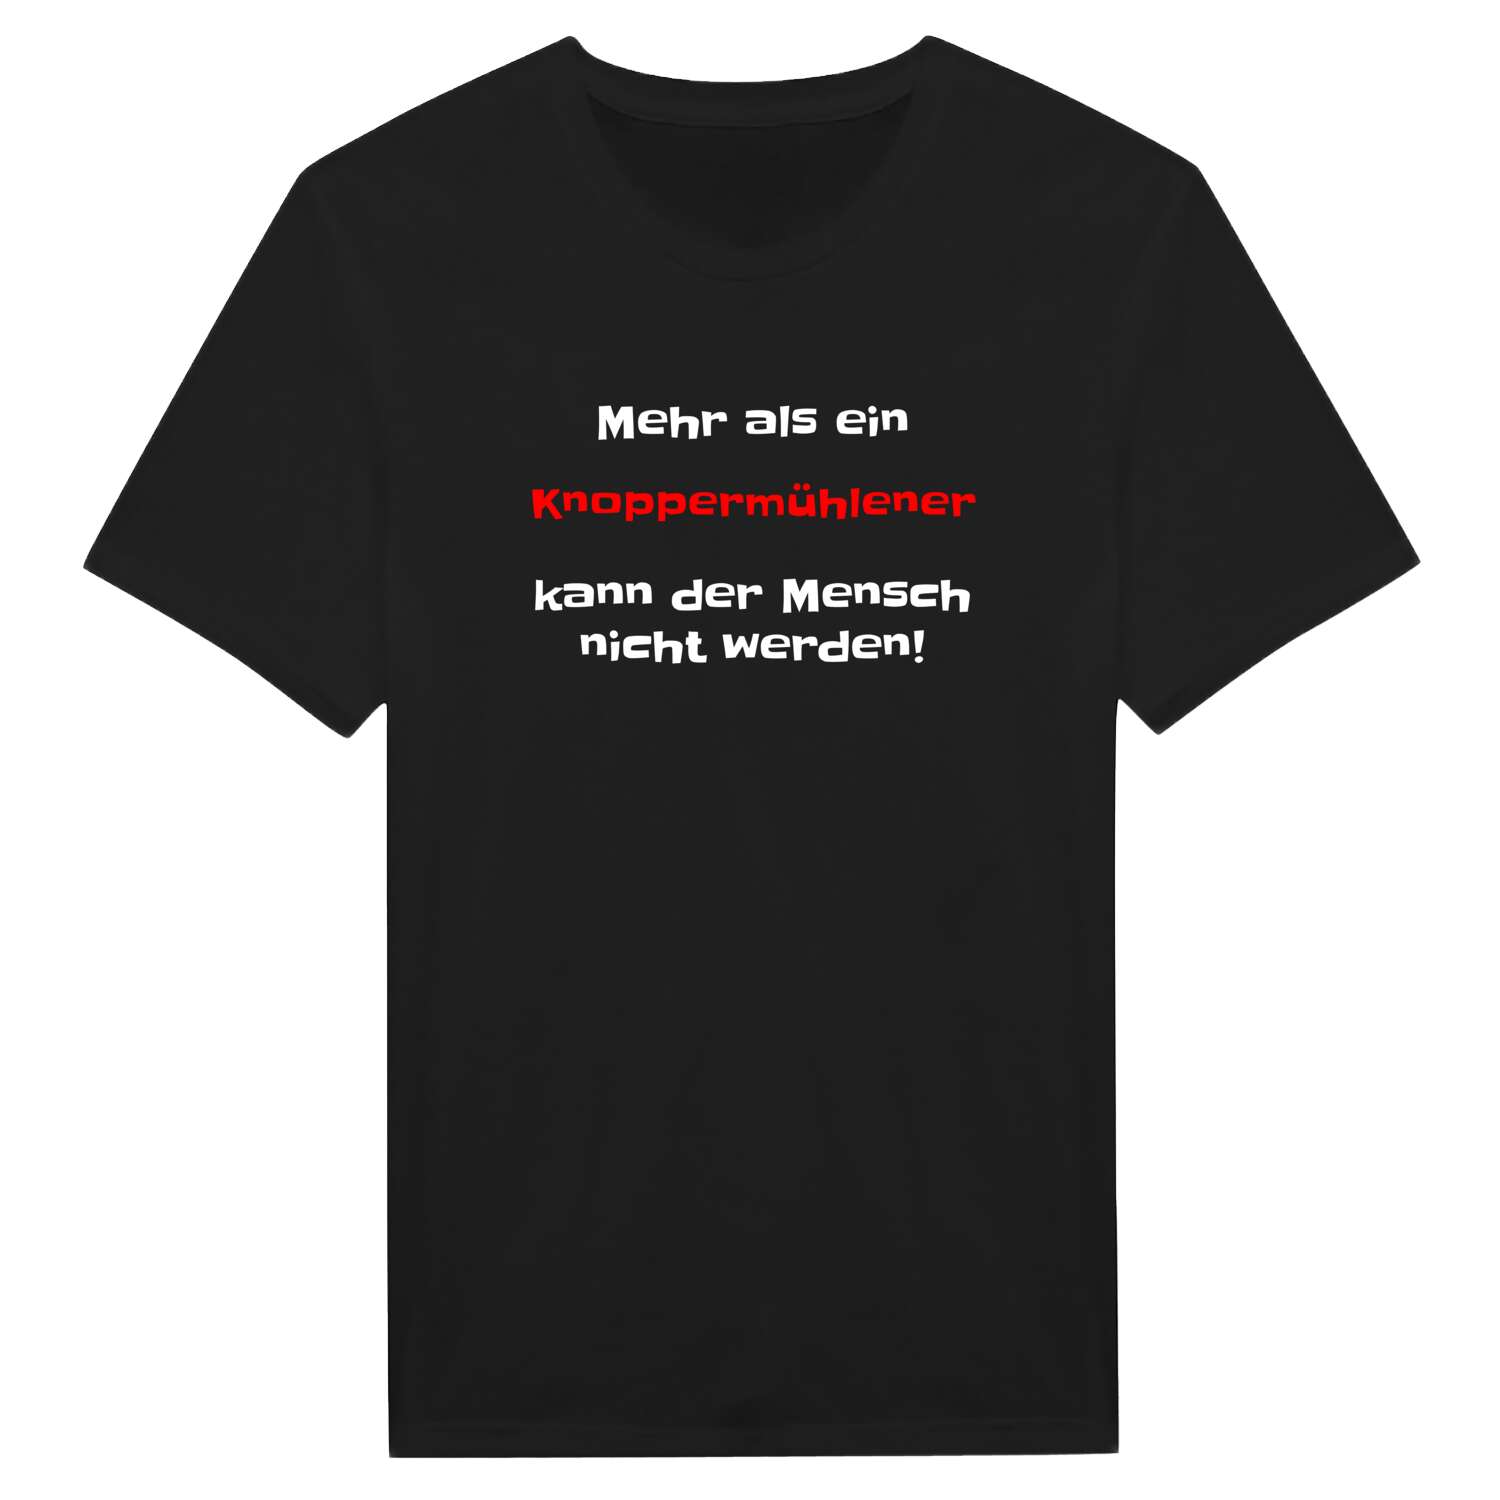 Knoppermühle T-Shirt »Mehr als ein«